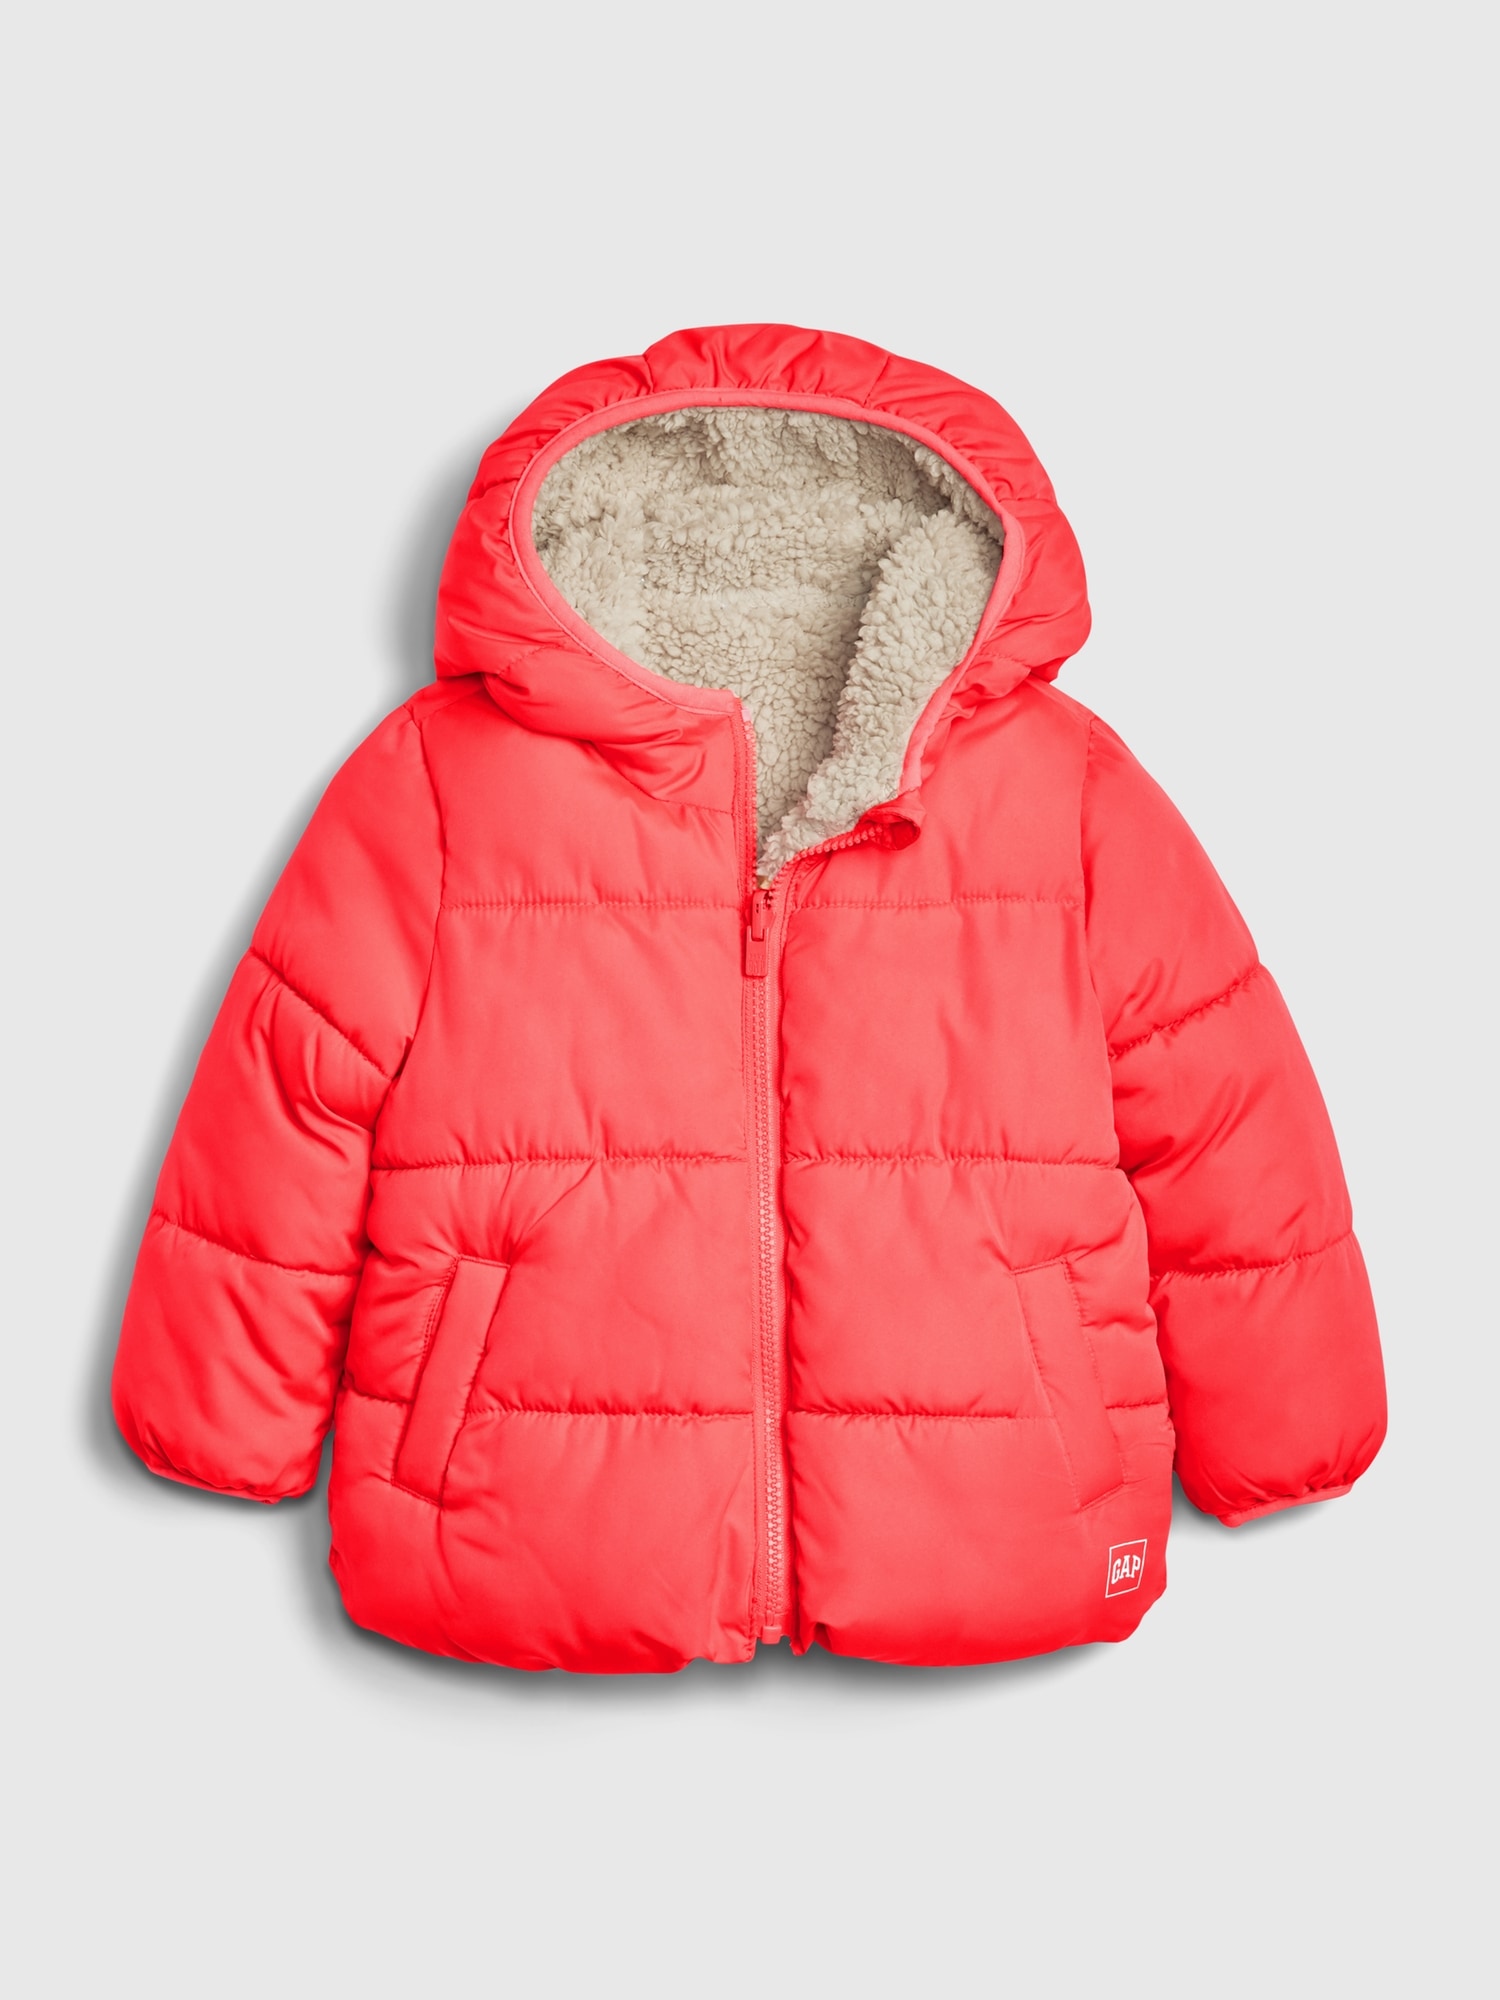 gap puffer jacket toddler girl